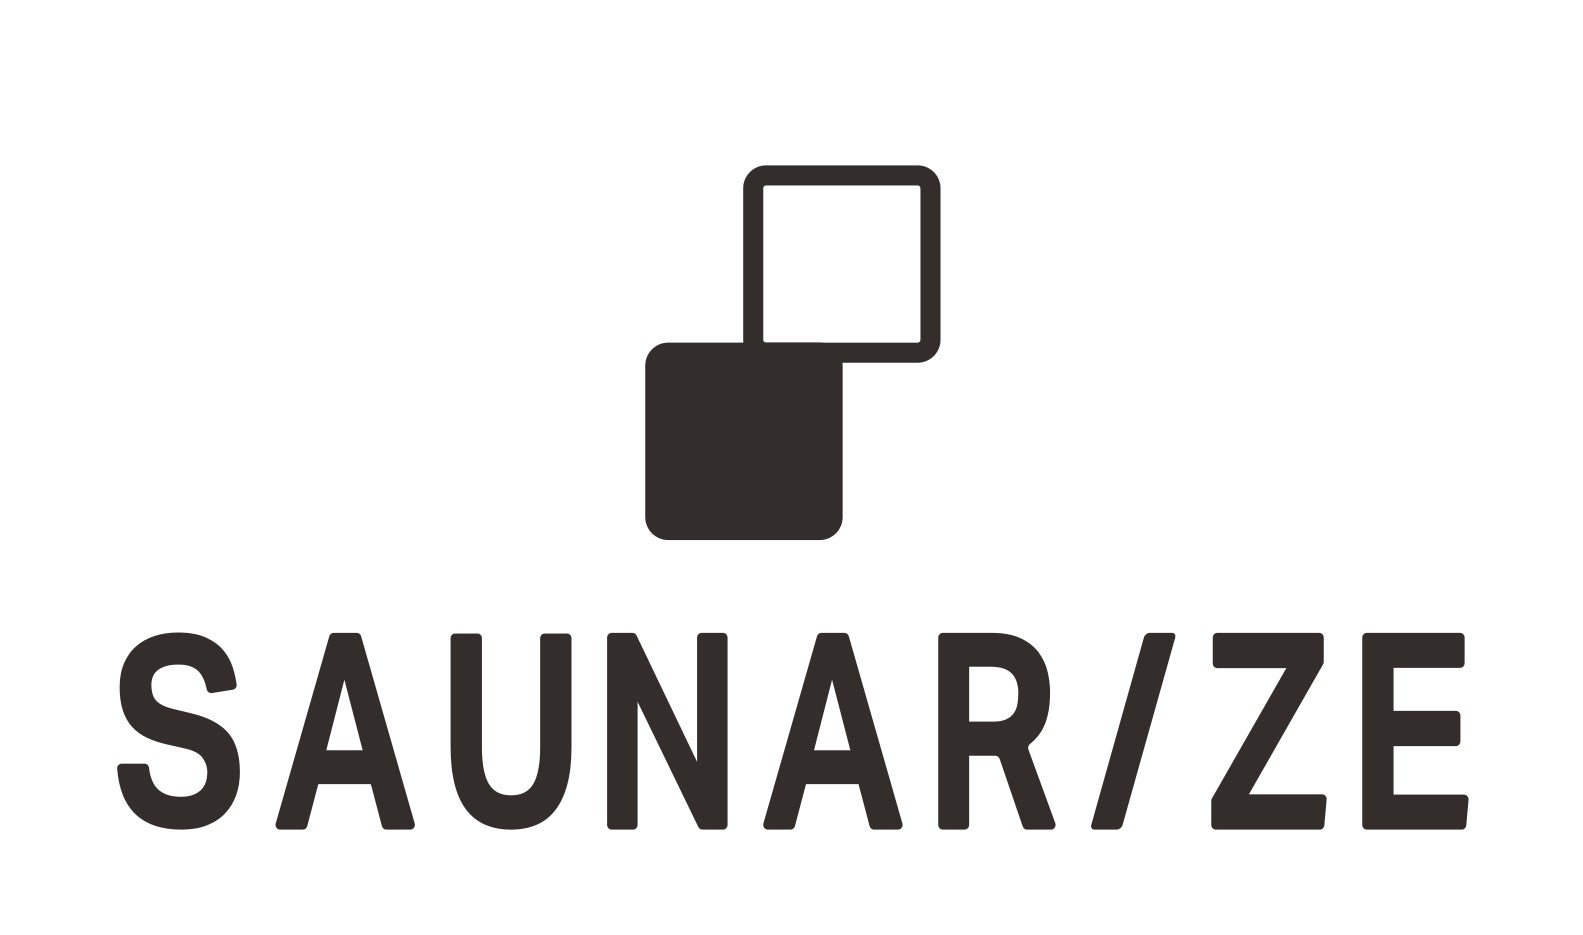 新サウナブランド『SAUNARIZE』を立ち上げ、国内外の事業施設にサウナ設備の導入へ